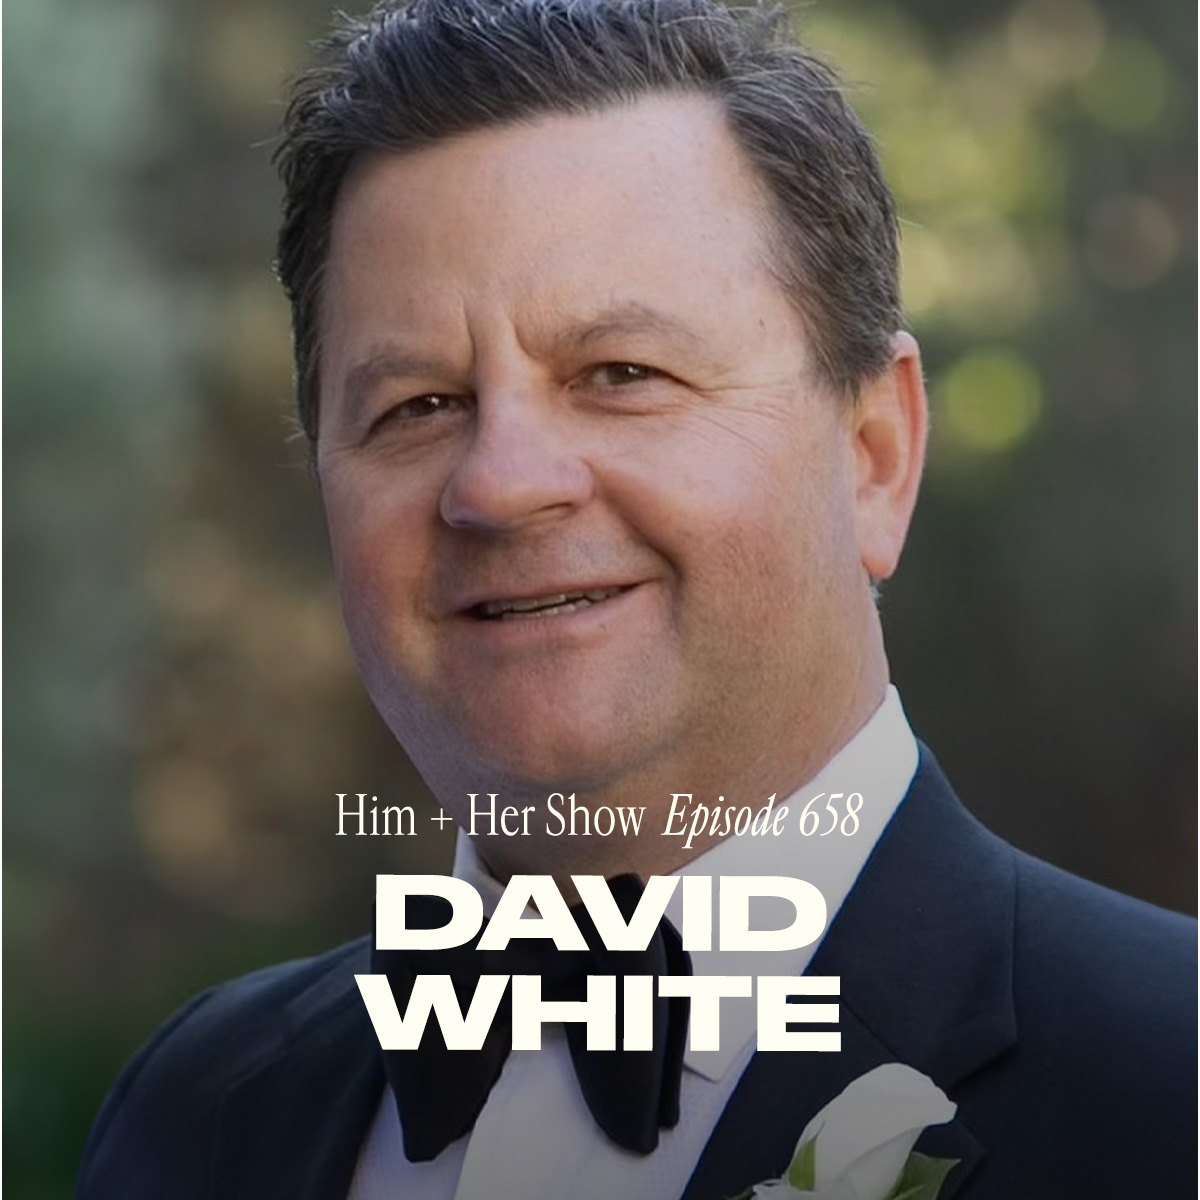 David White